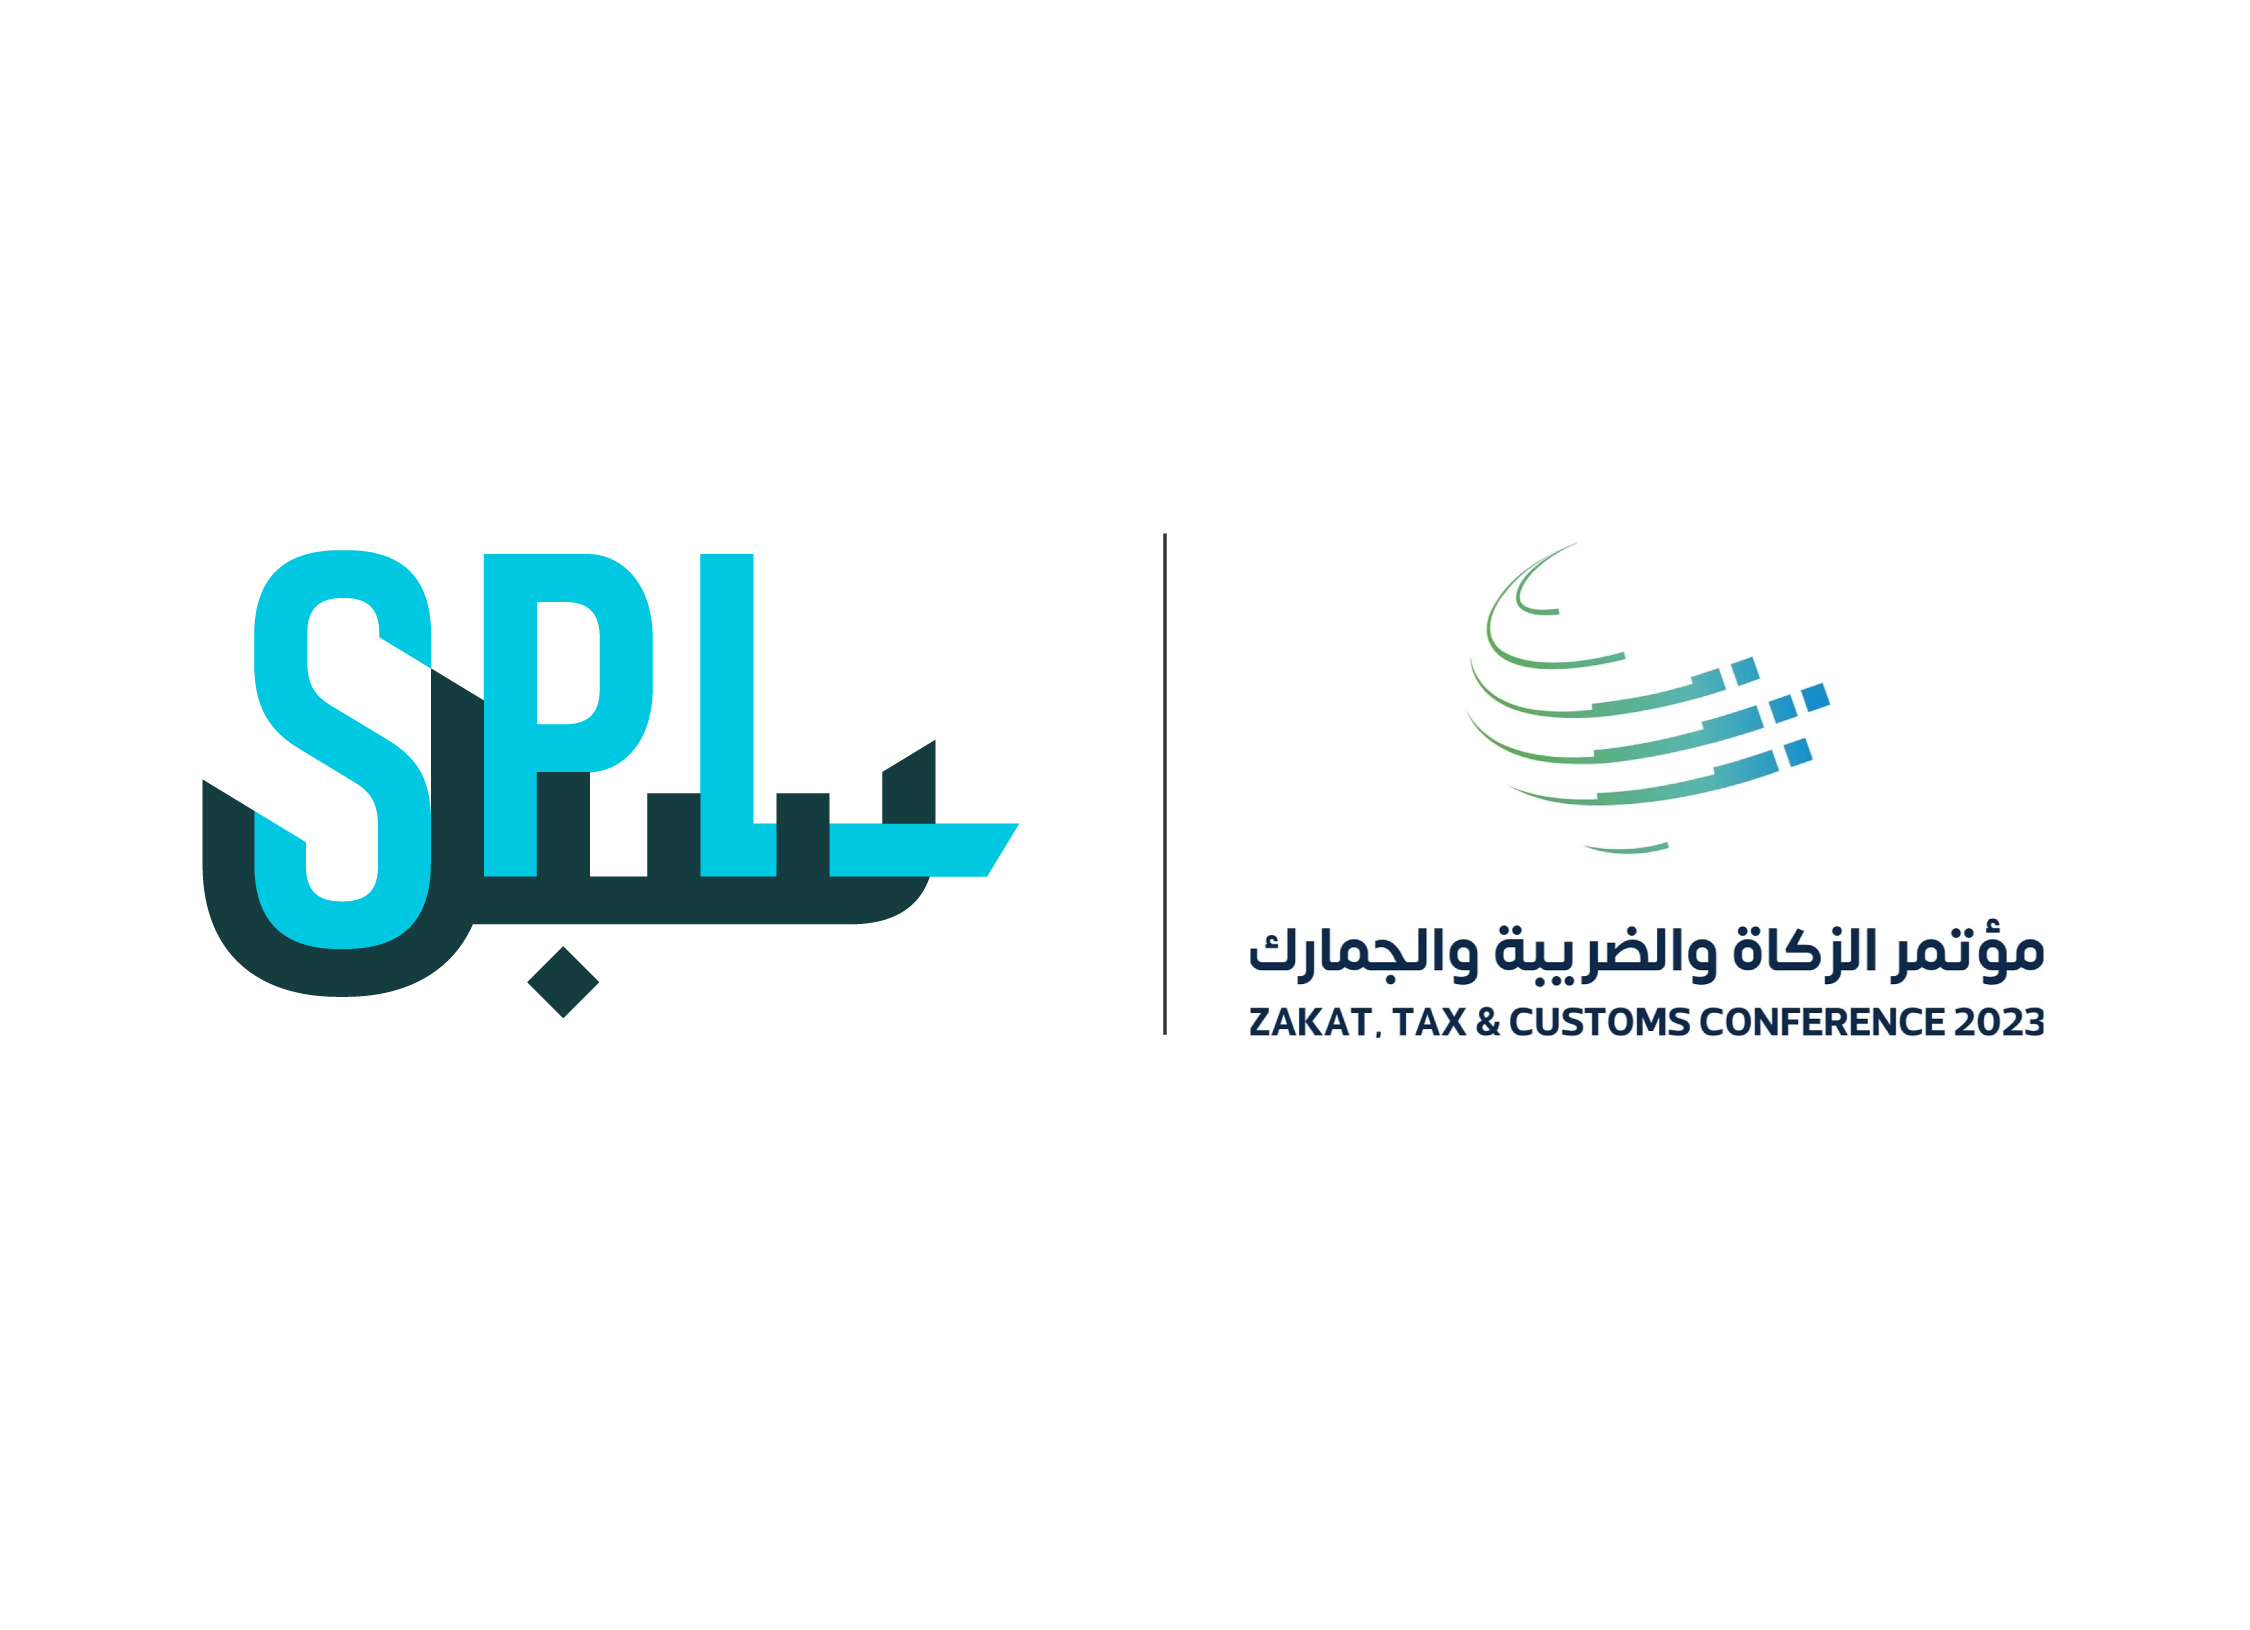 البريد السعودي| سبل مشاركاً في مؤتمر الزكاة والضريبة والجمارك 